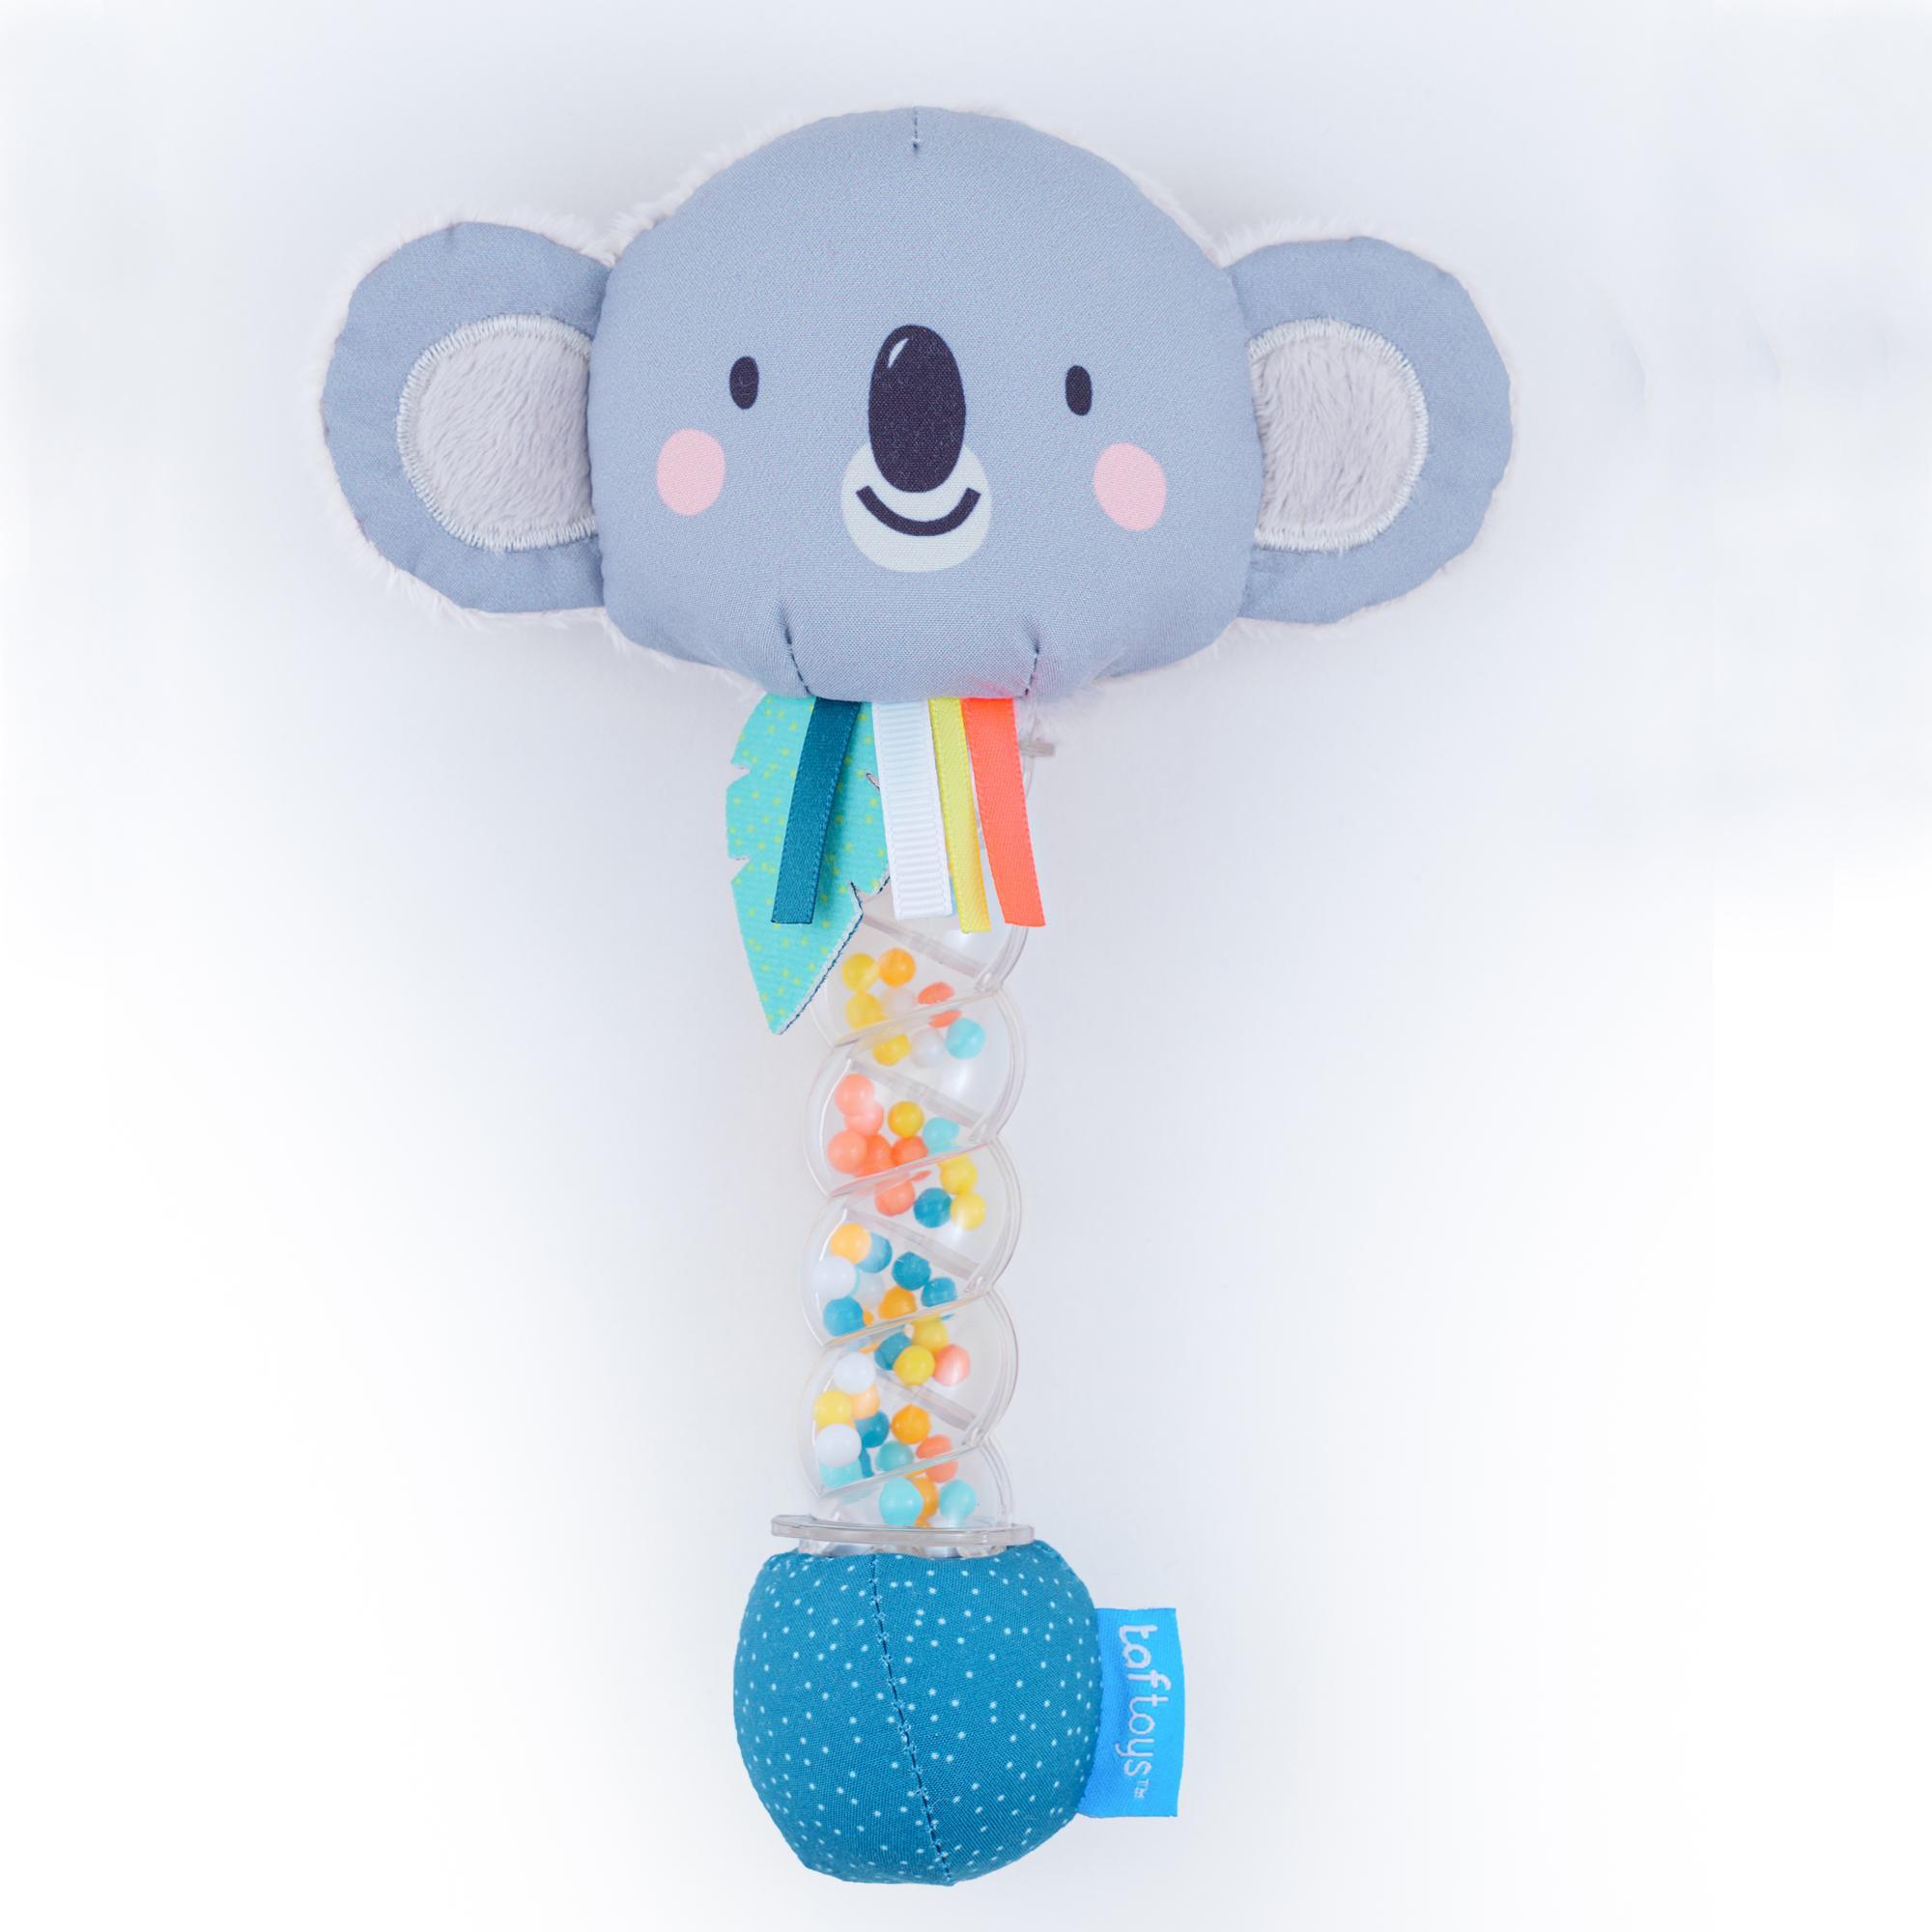 Taf Toys Barškutis
„Koala Rainstick“  - Taf Toys